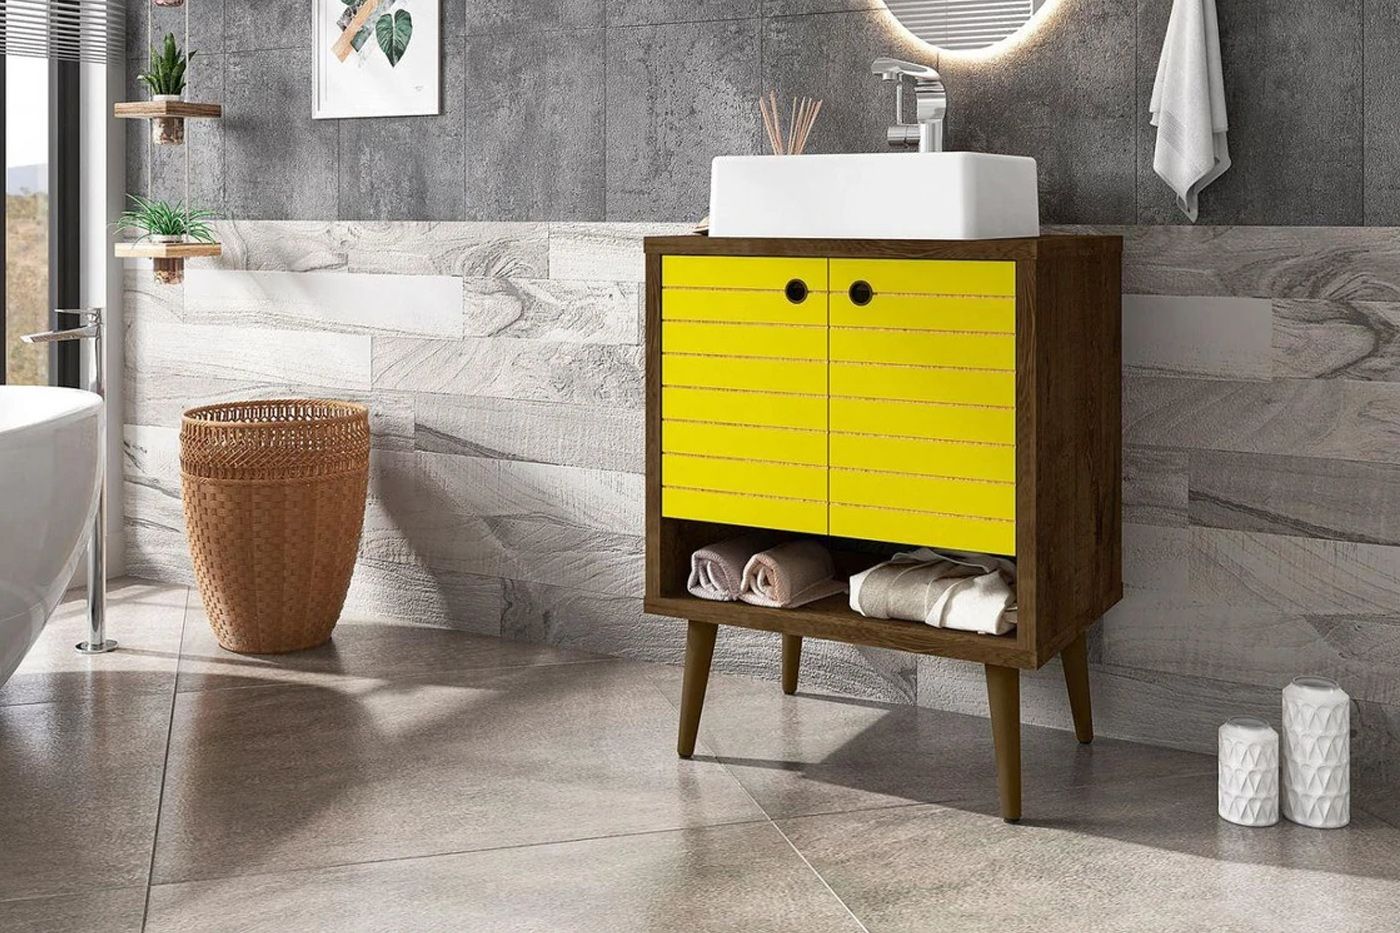 Lekedi 24" Bathroom Vanity Sink - Rustic Brown/Yellow